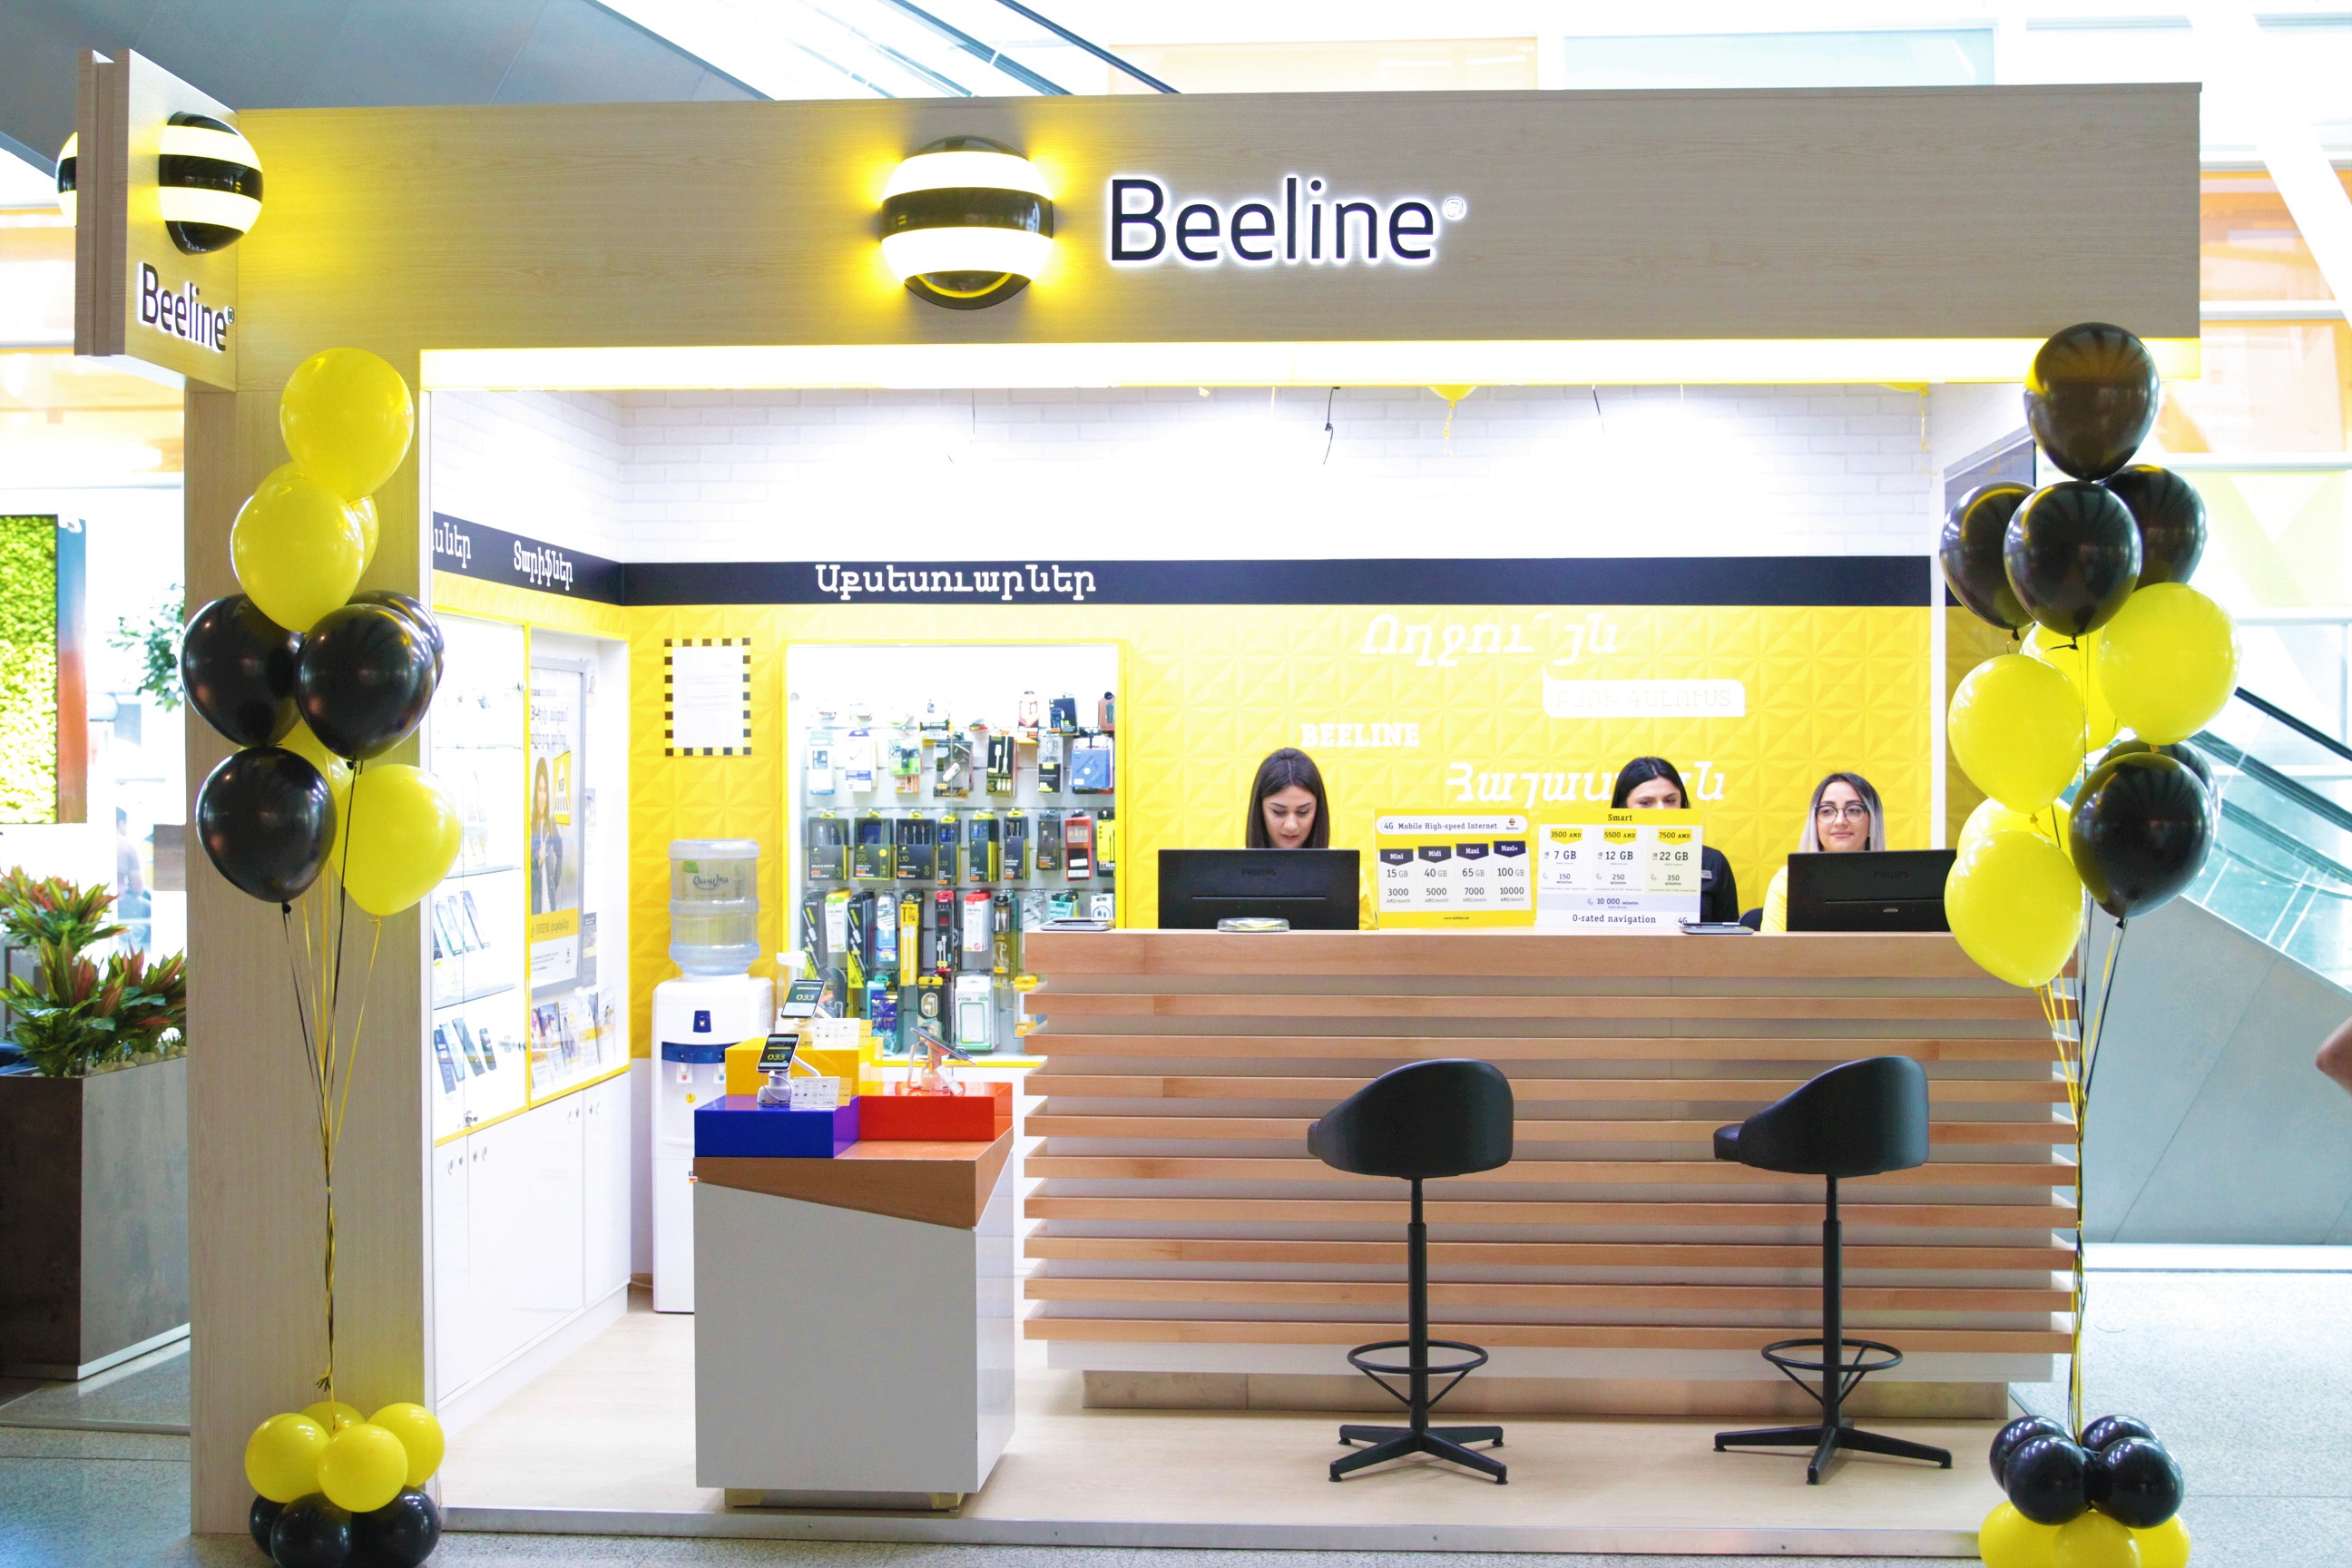 Beeline. Զվարթնոց օդանավակայանում բացվել է նորացված վաճառքի և սպասարկման գրասենյակ